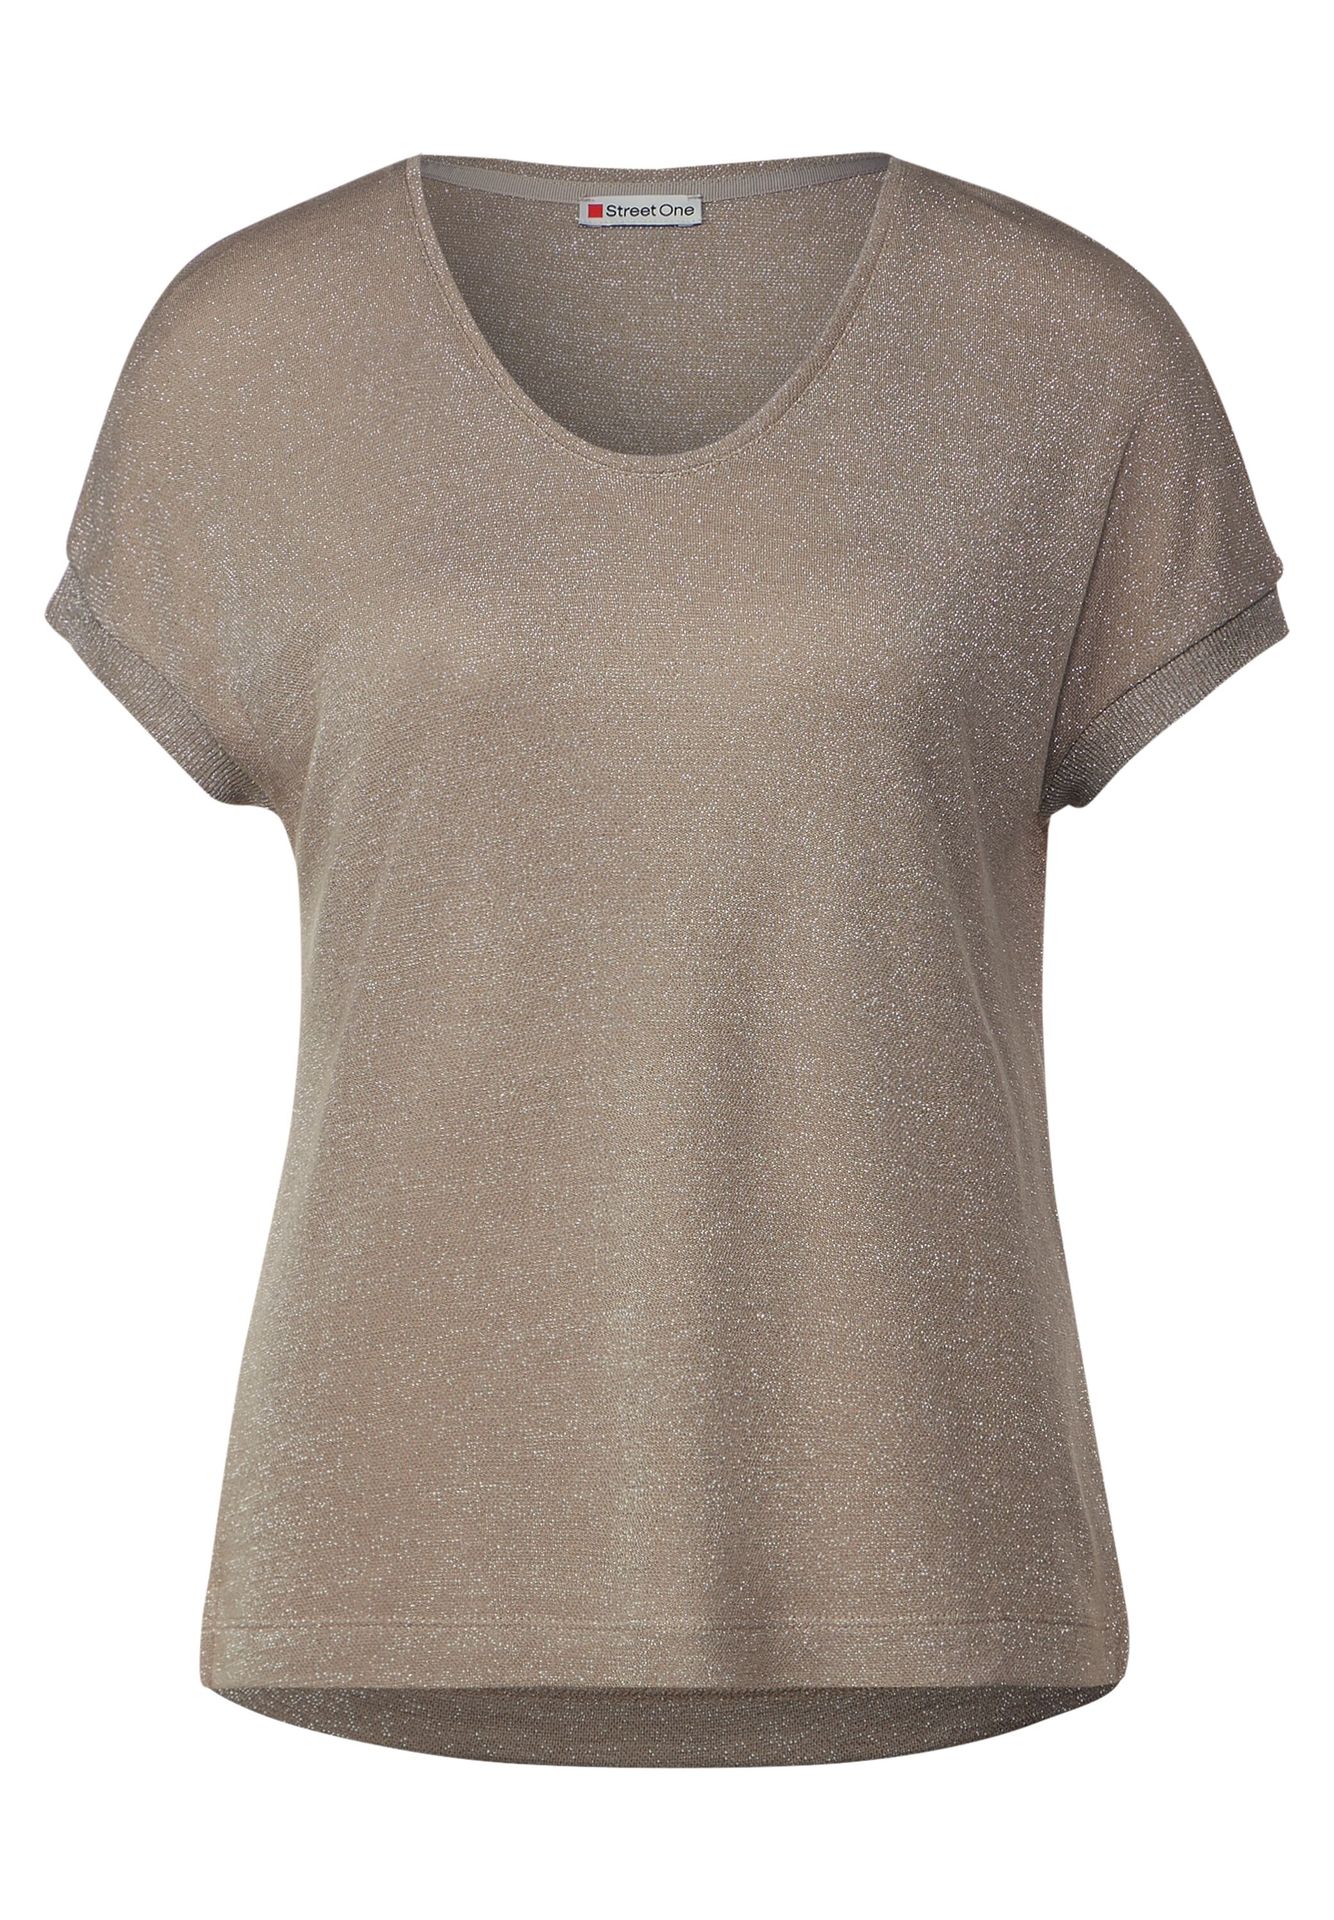 Street-One LTD QR v-neck shiny shirt safari beige 2900145733048